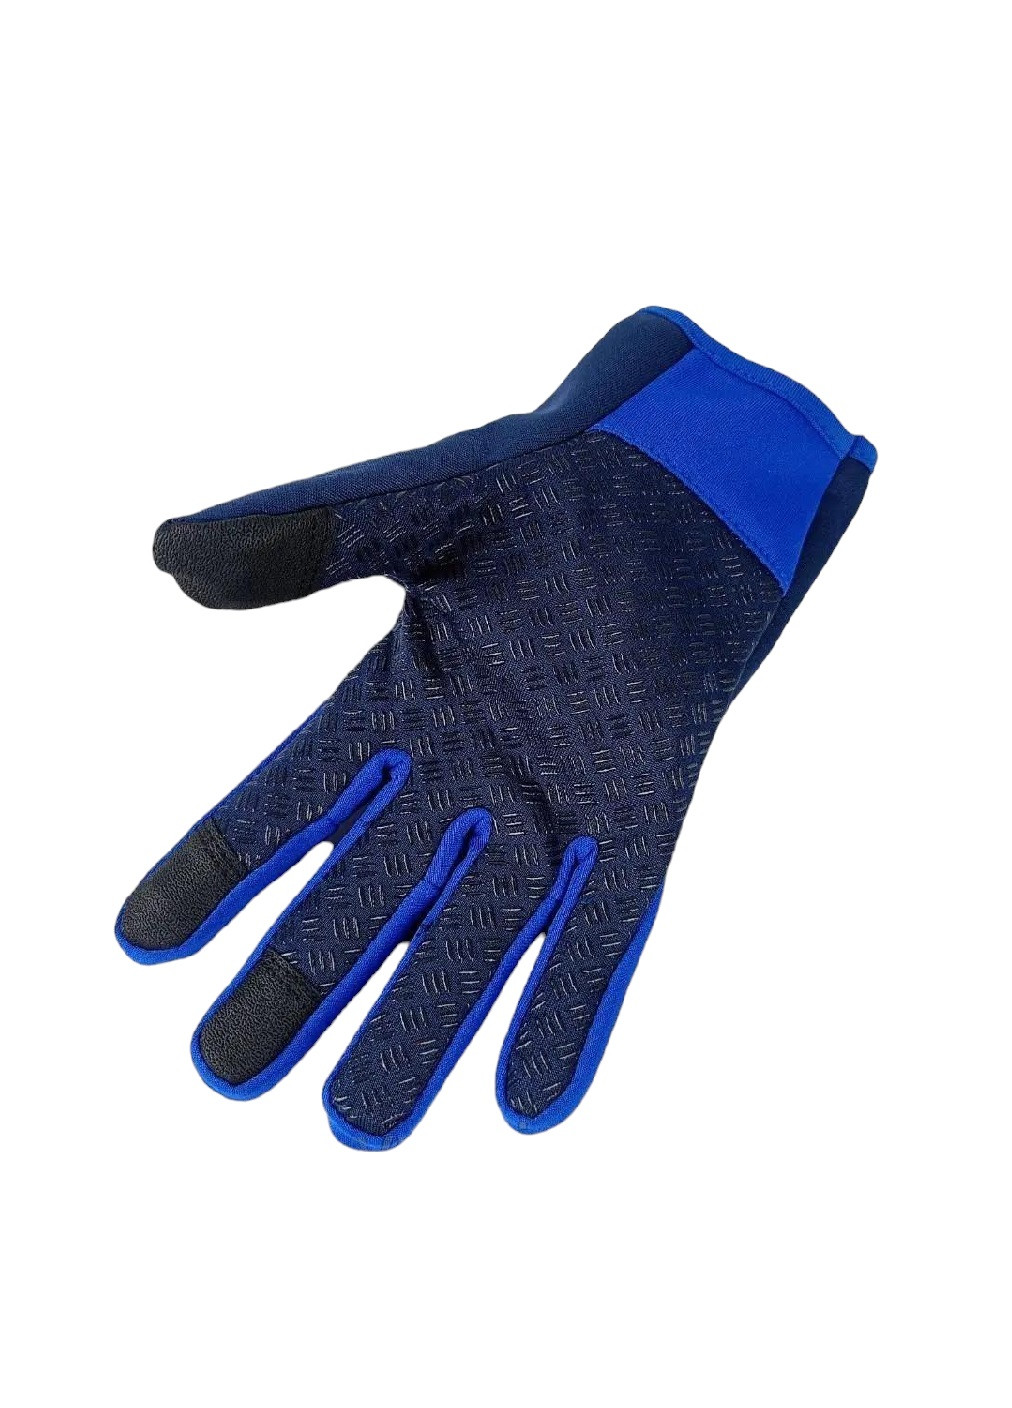 Велоперчатки велосипедные перчатки с водоотталкивающим сенсорным покрытием спандекс флис (476036-Prob) Синие S Unbranded (275863533)